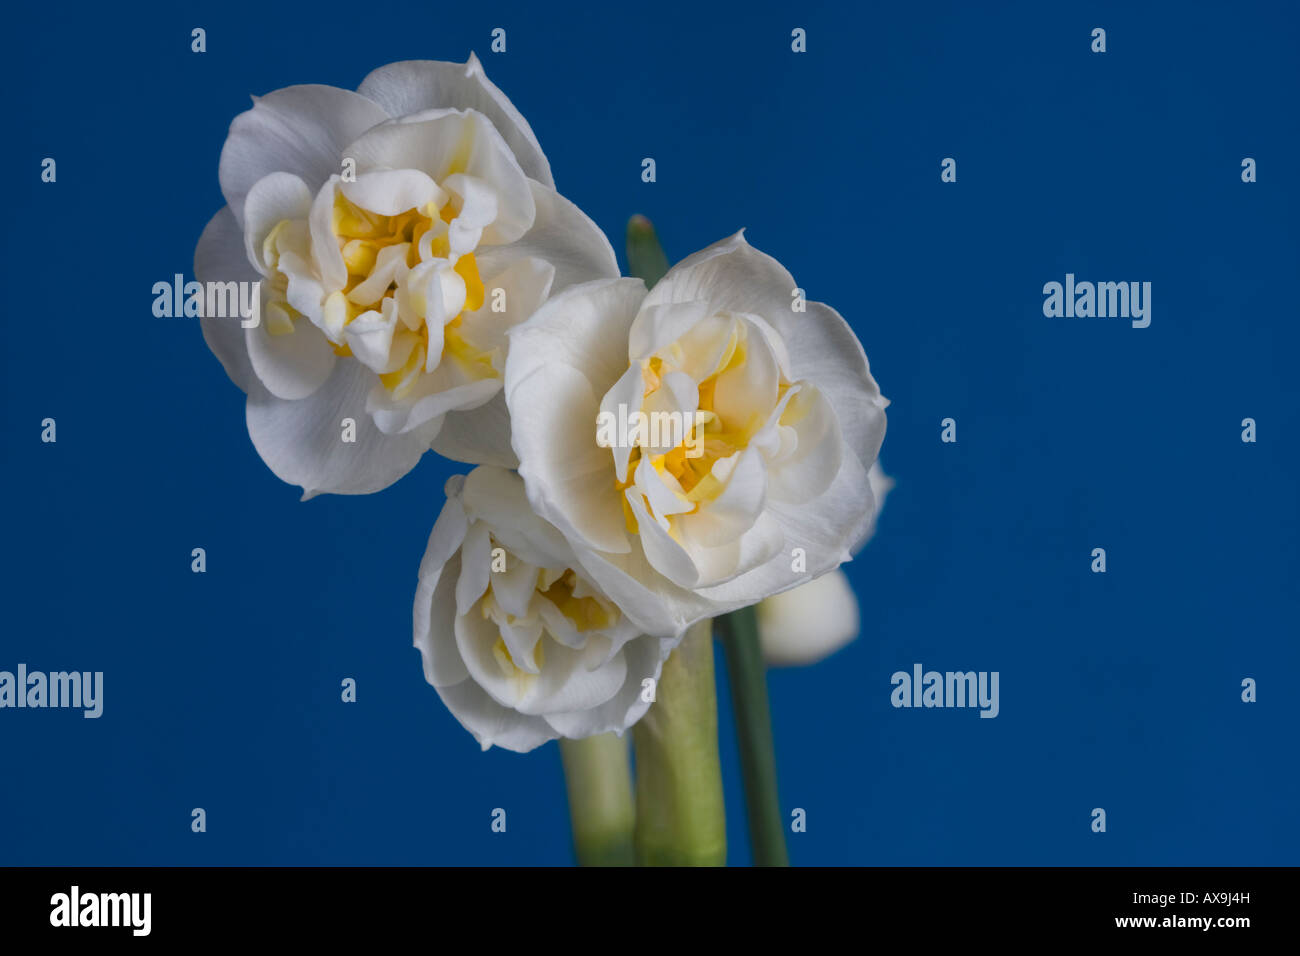 Narcissus bridal crown flowerhead dans un studio Banque D'Images